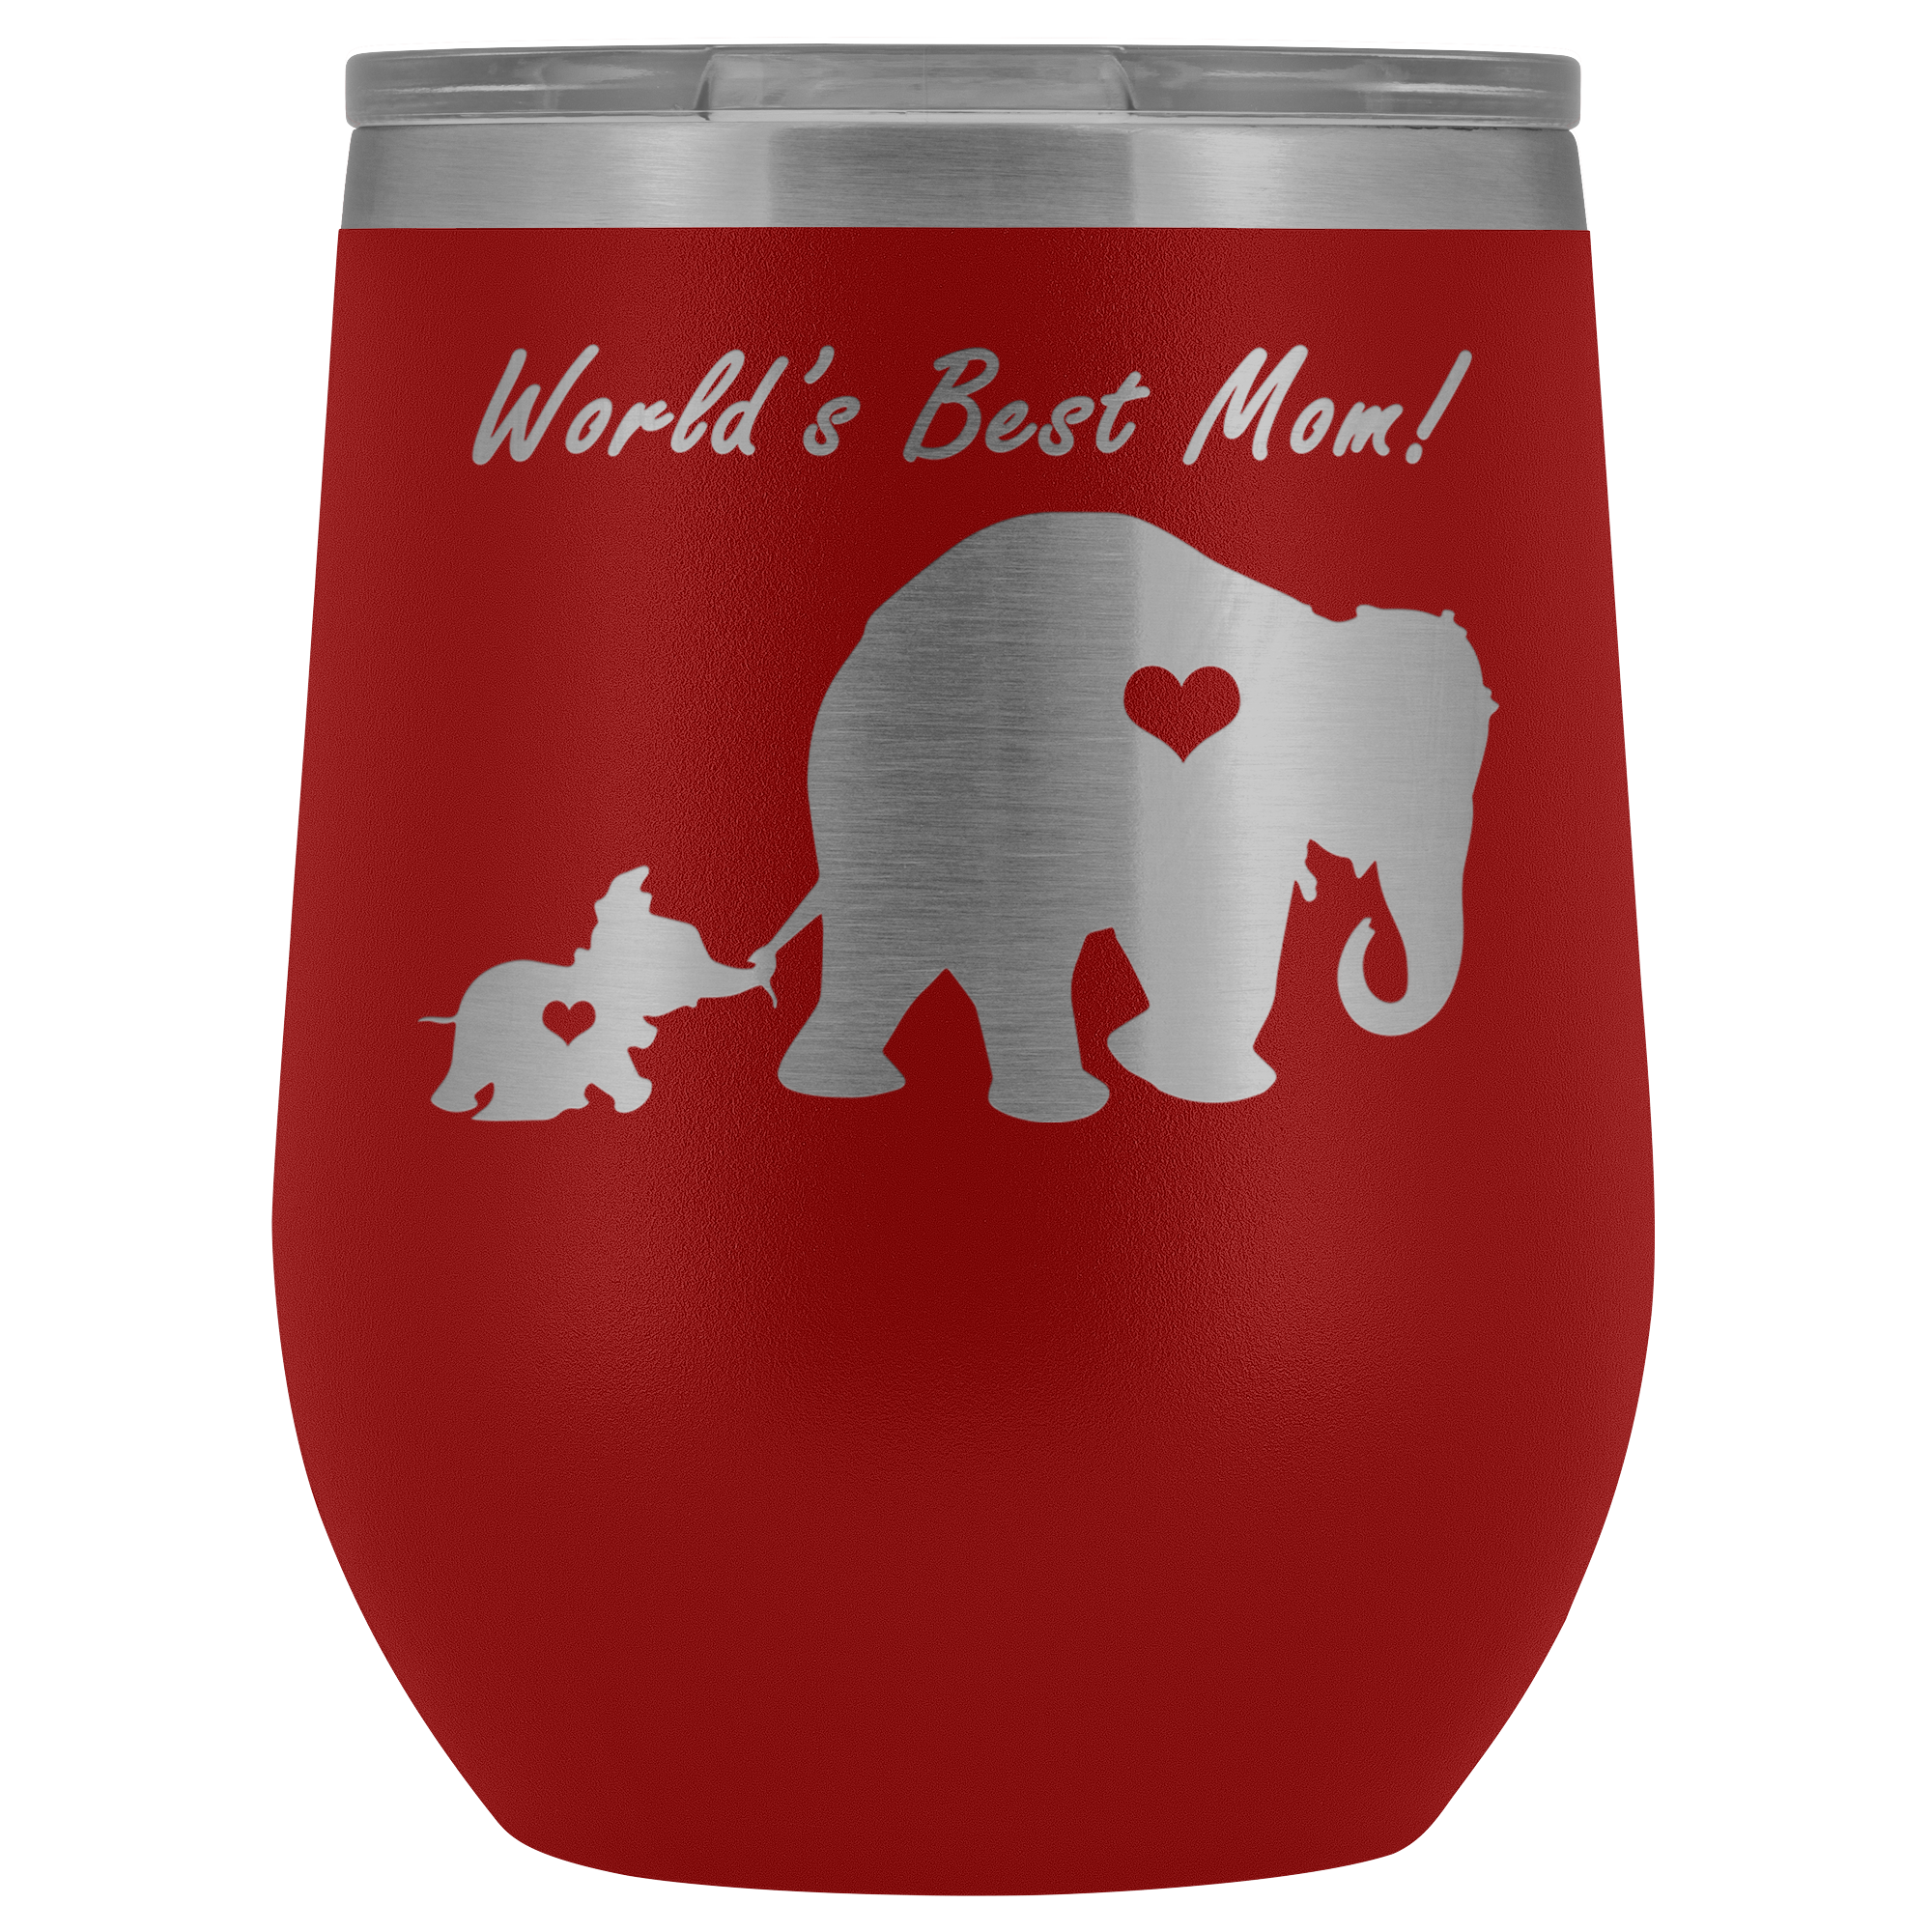 Dumbo - World's Best Mom! - 12 oz Wine Tumbler - 2